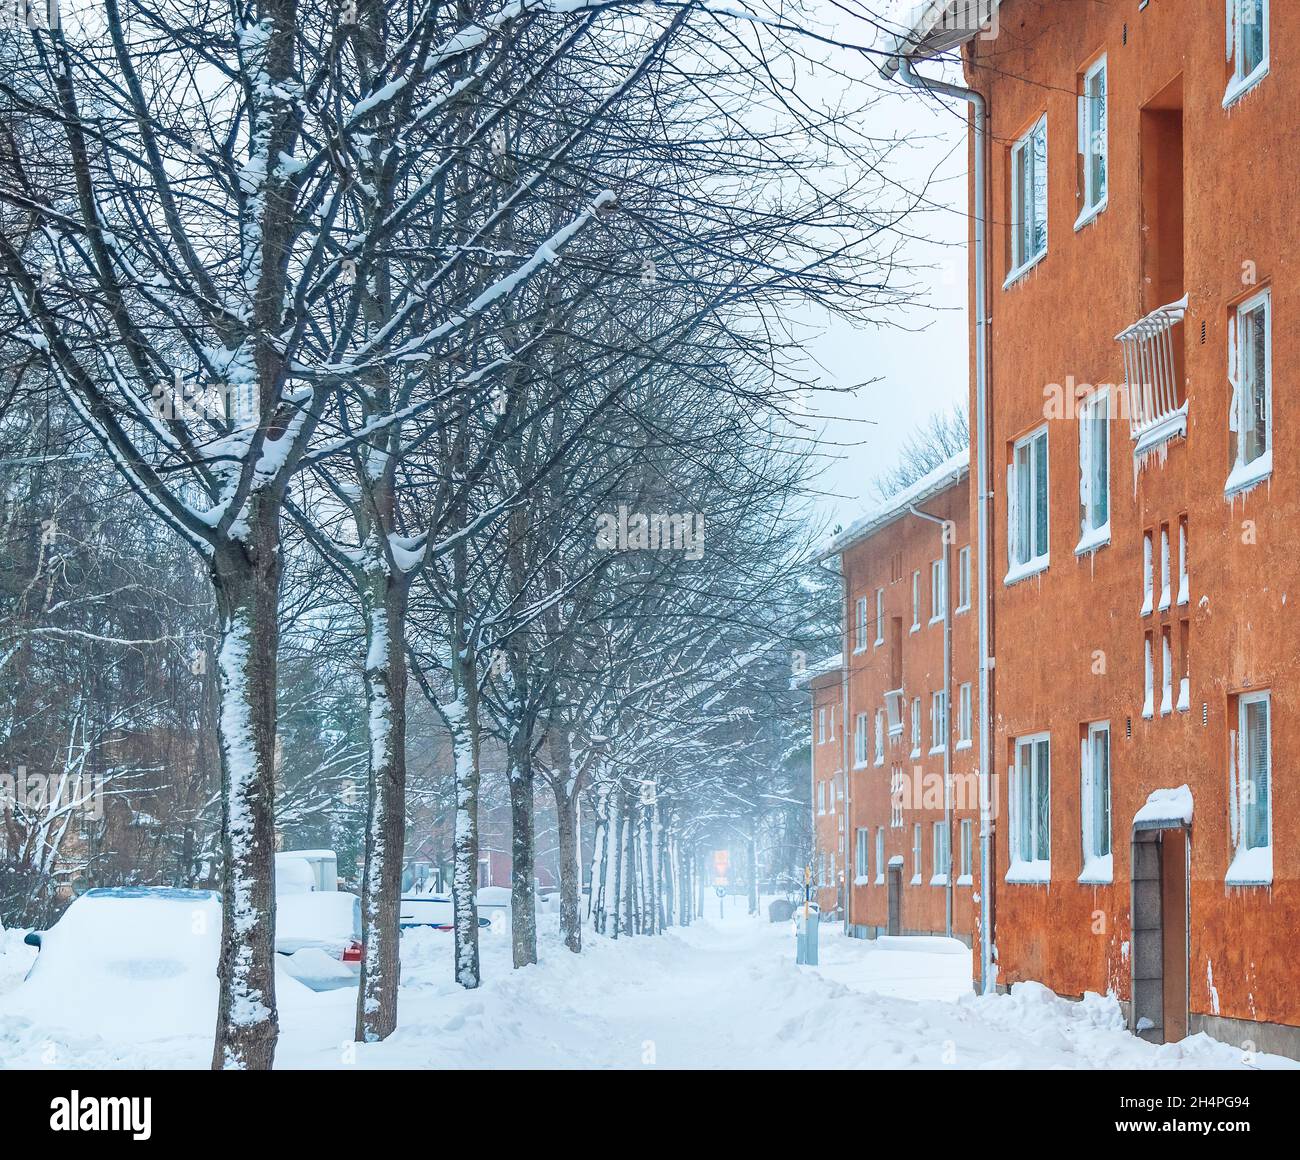 Façades de bâtiments orange dans une rue couverte de neige en hiver.Snowdrift sur une route dans le quartier résidentiel.Chute de neige à HELSINKI FINLANDE Blizzard Banque D'Images